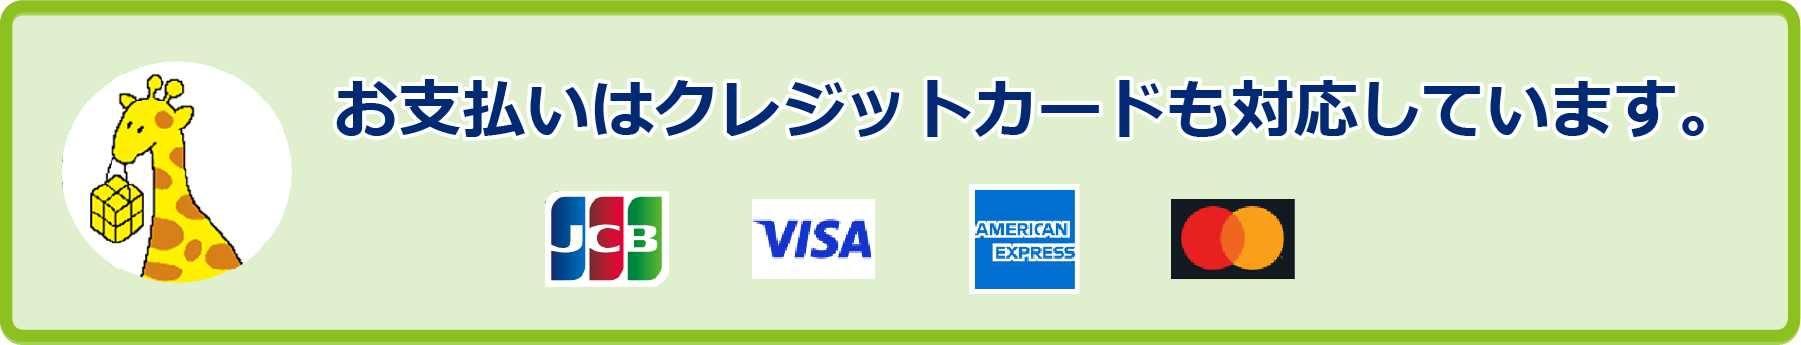 お支払いはクレジットカードも対応しています。